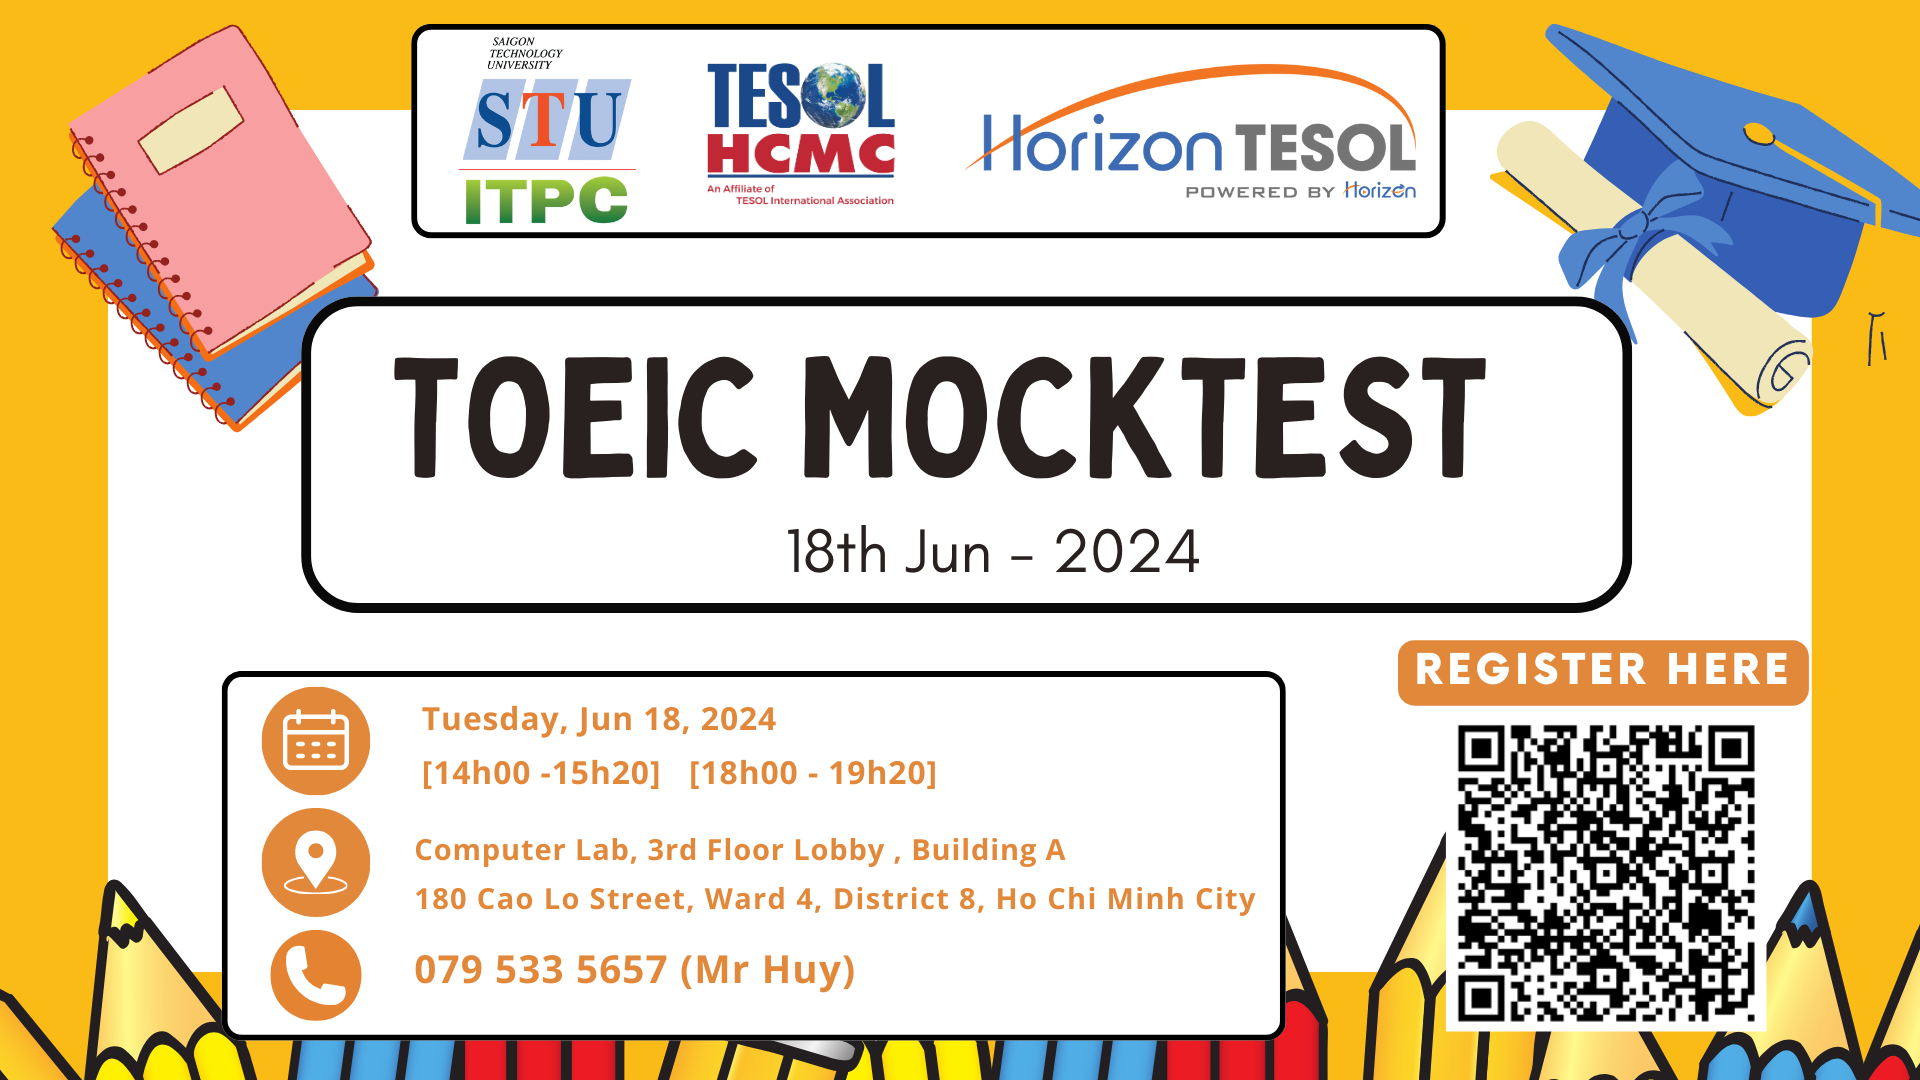 Thông tin về kỳ thi TOEIC MOCKTEST dành cho sinh viên STU